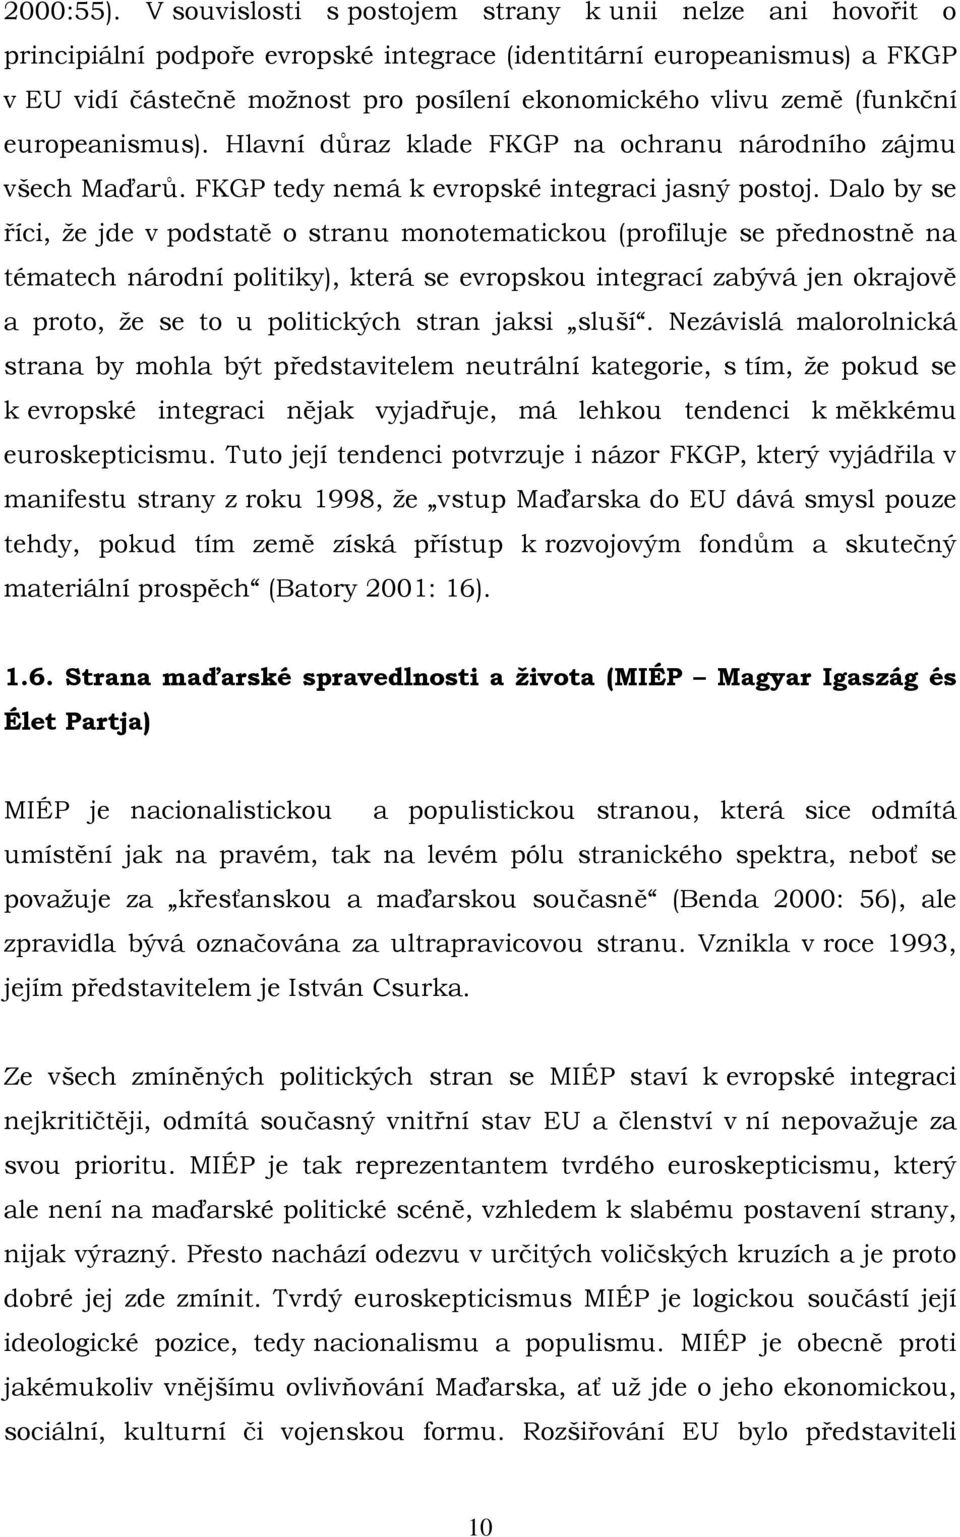 (funkční europeanismus). Hlavní důraz klade FKGP na ochranu národního zájmu všech Maďarů. FKGP tedy nemá k evropské integraci jasný postoj.